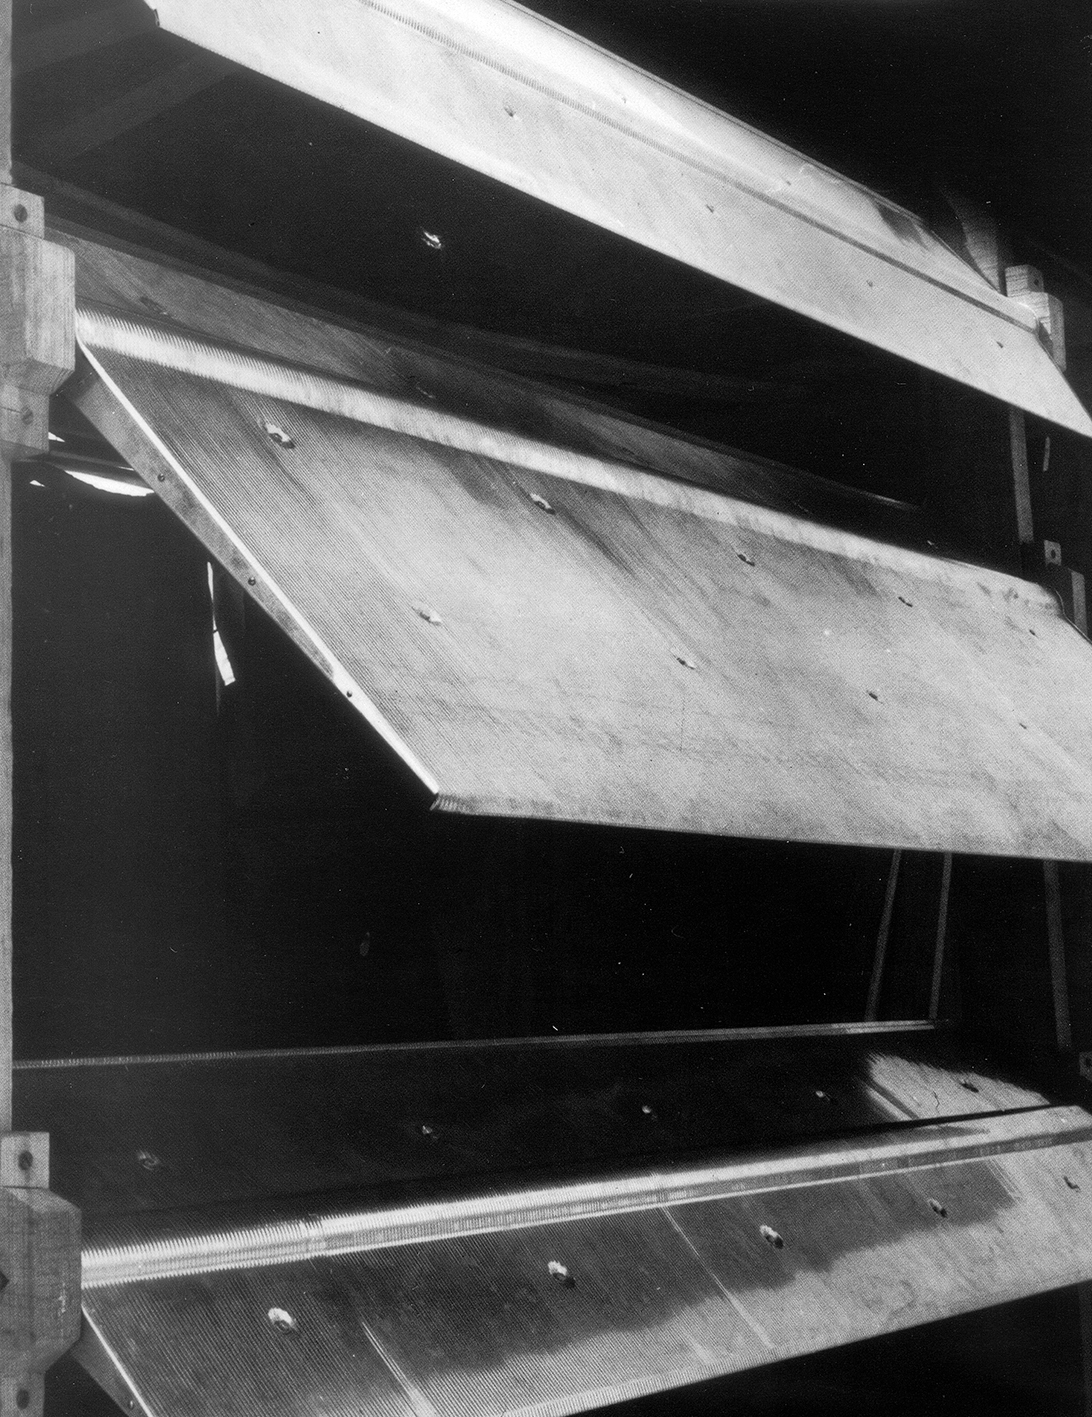 Immeuble d’habitation, Conakry (Atelier LWD Lagneau, Weill, Dimitrijevic, arch., 1953). Panneaux de façade brise-soleil à lames orientables conçus par Jean Prouvé.